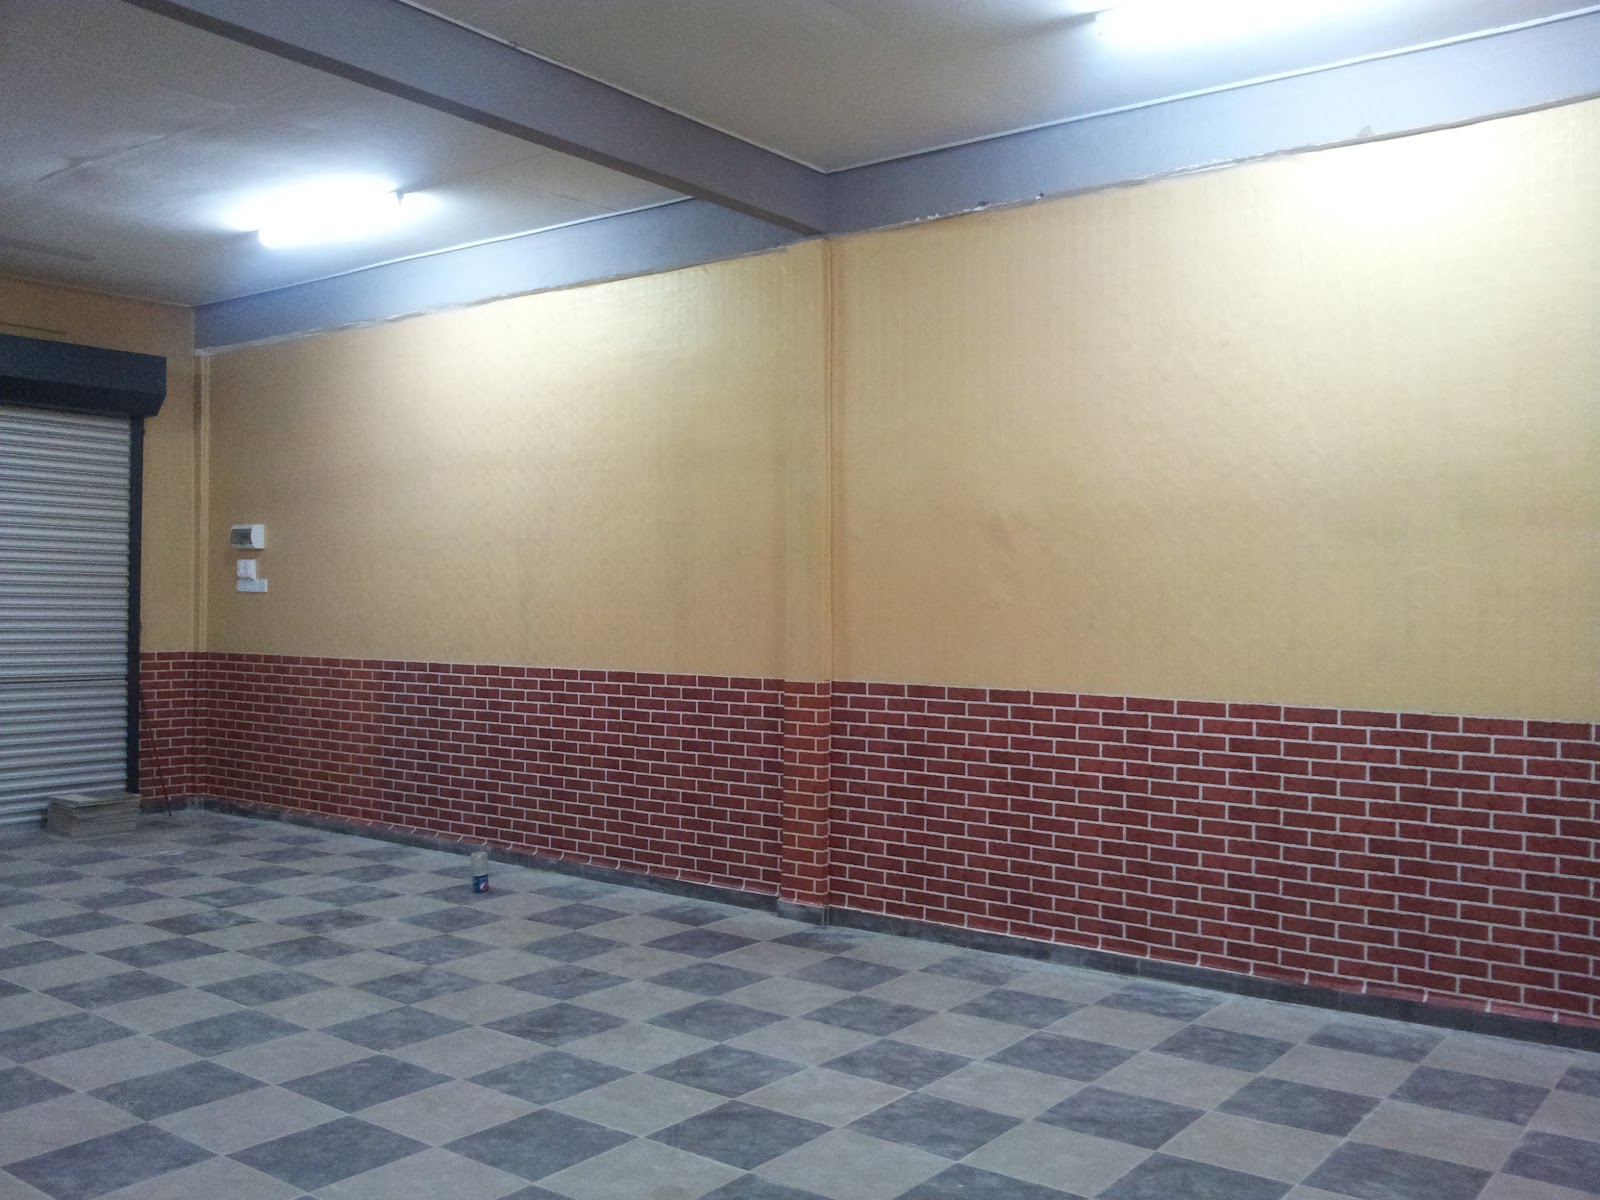 kedai wallpaper,pared,propiedad,suelo,techo,habitación